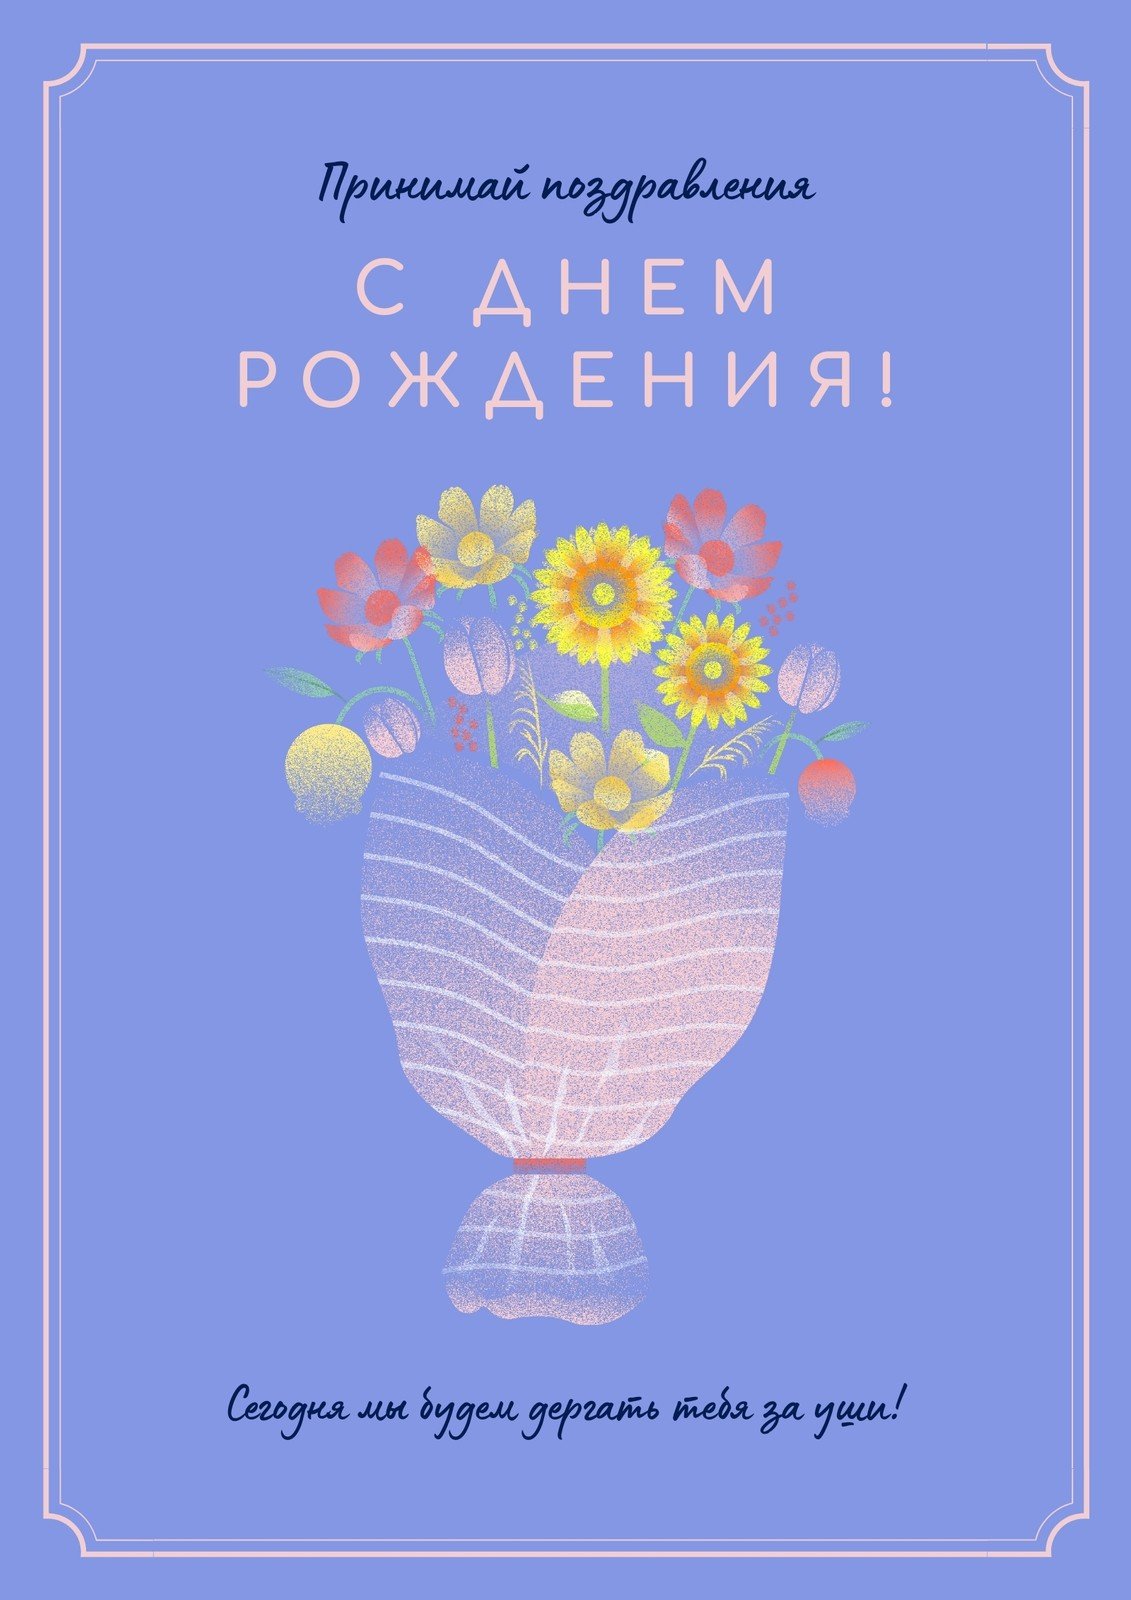 Шаблон плаката «Дни рождения круглый год» — Шаблоны для печати